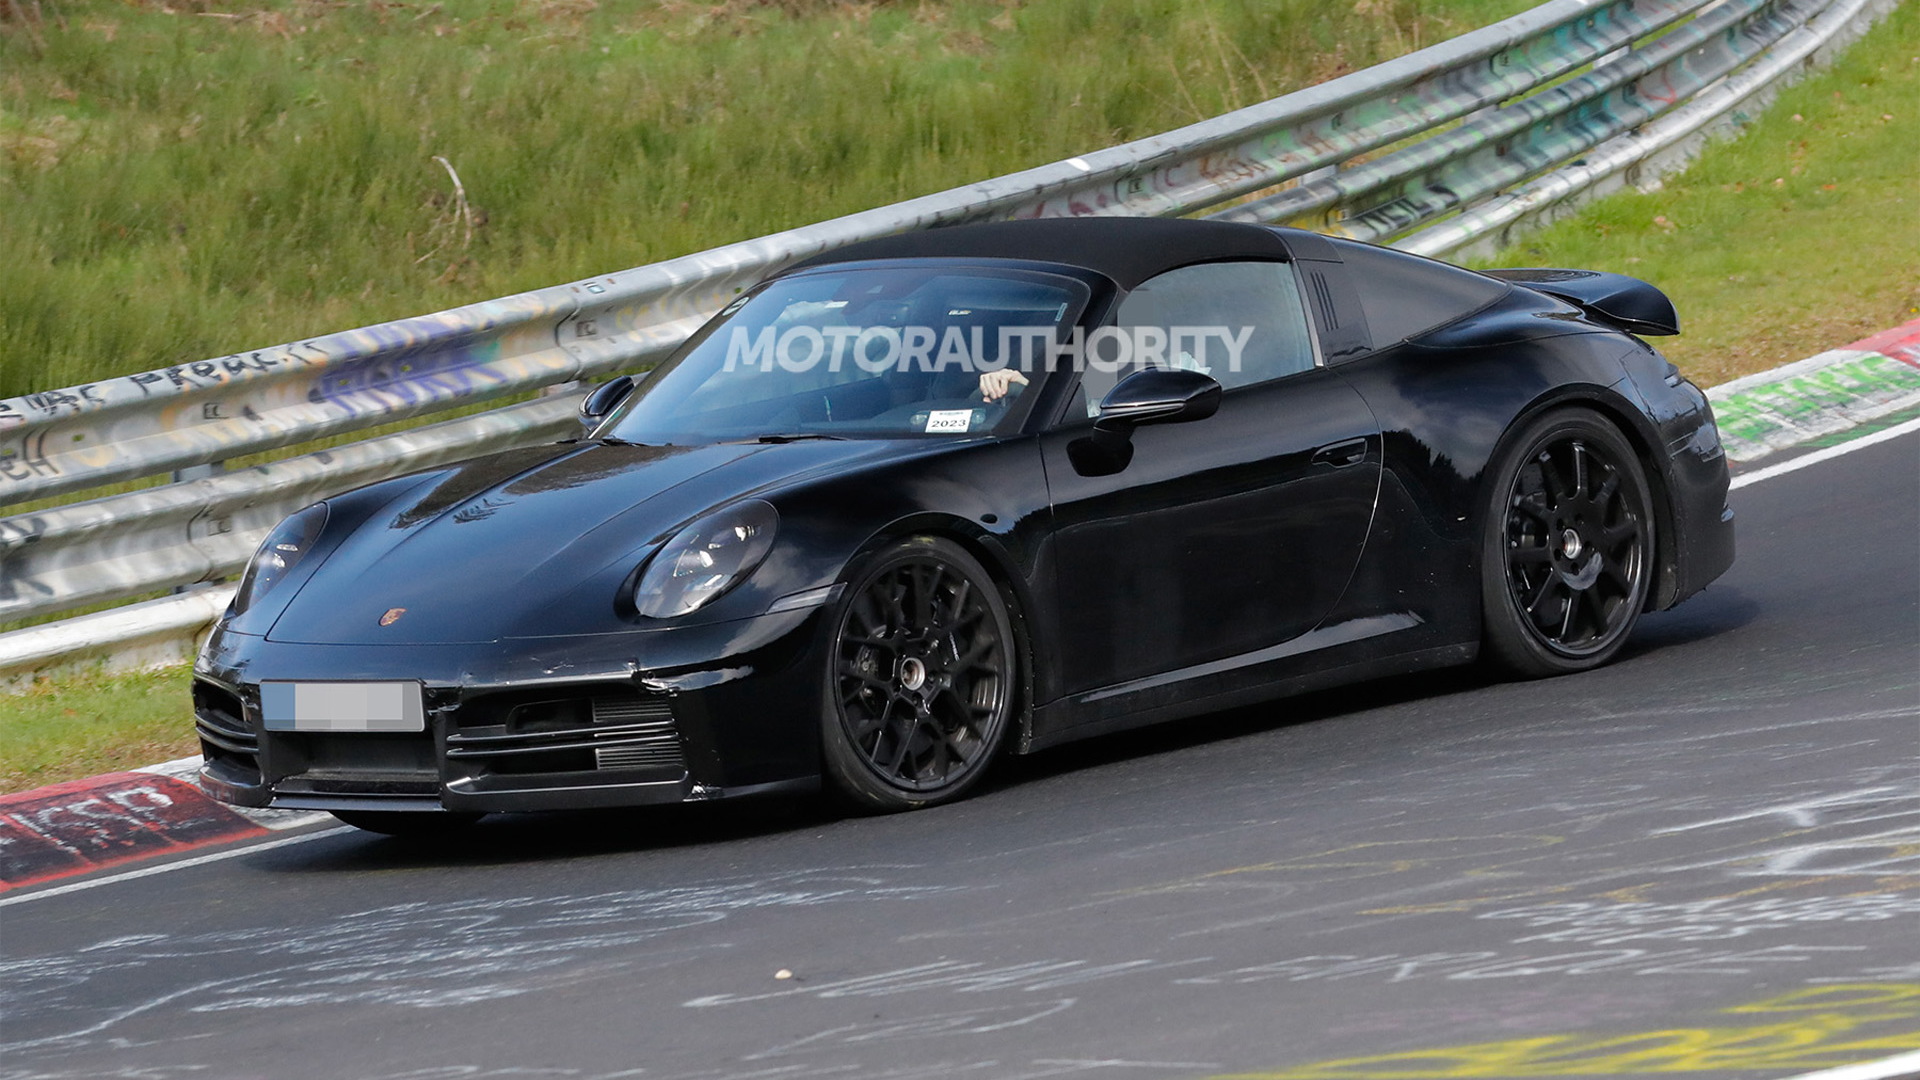 2025 Porsche 911 Targa facelift spy shots - Photo credit: Baldauf